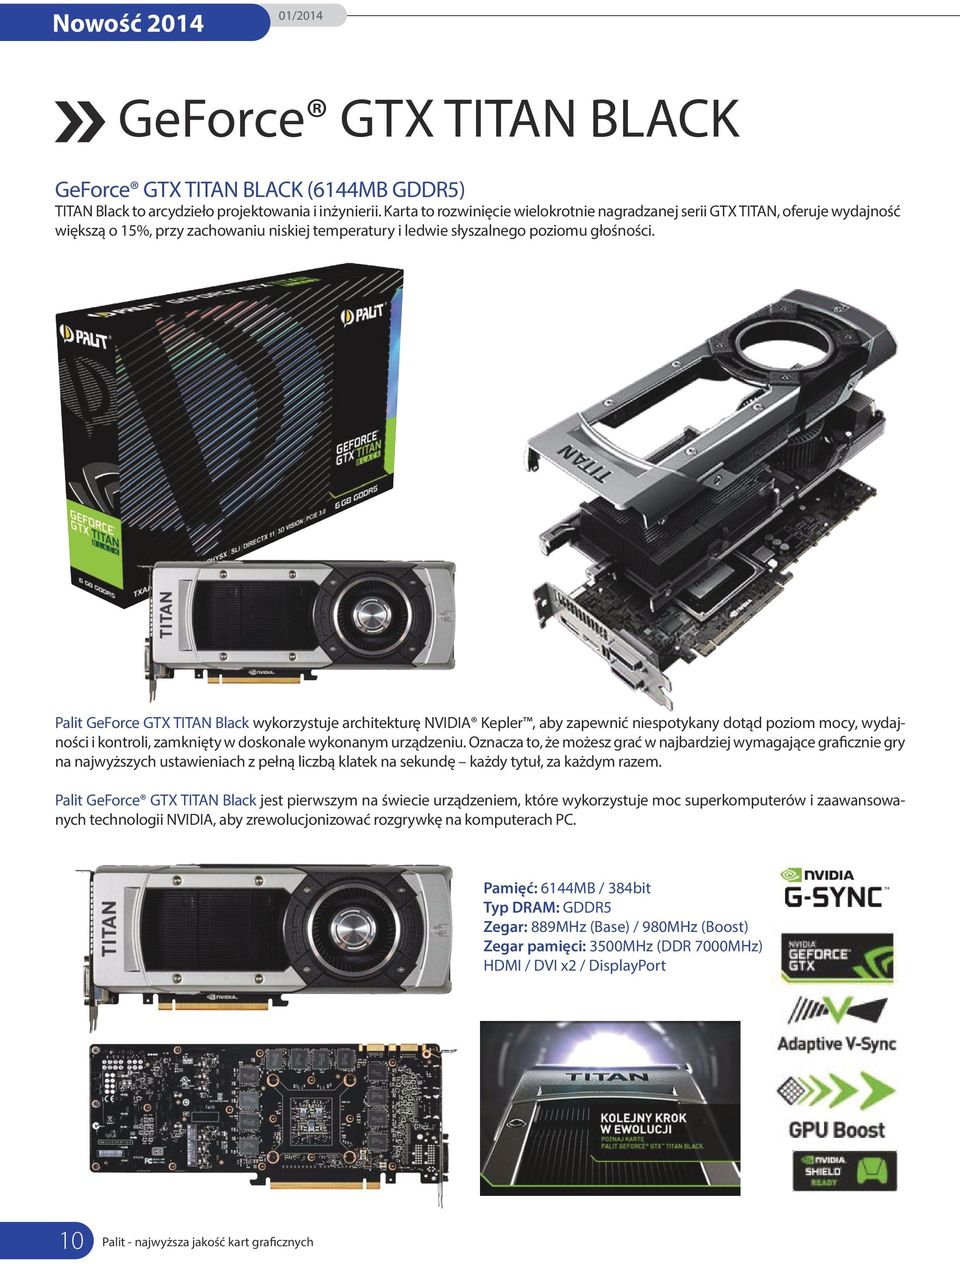 Palit GeForce GTX TITAN Black wykorzystuje architekturę NVIDIA Kepler, aby zapewnić niespotykany dotąd poziom mocy, wydajności i kontroli, zamknięty w doskonale wykonanym urządzeniu.